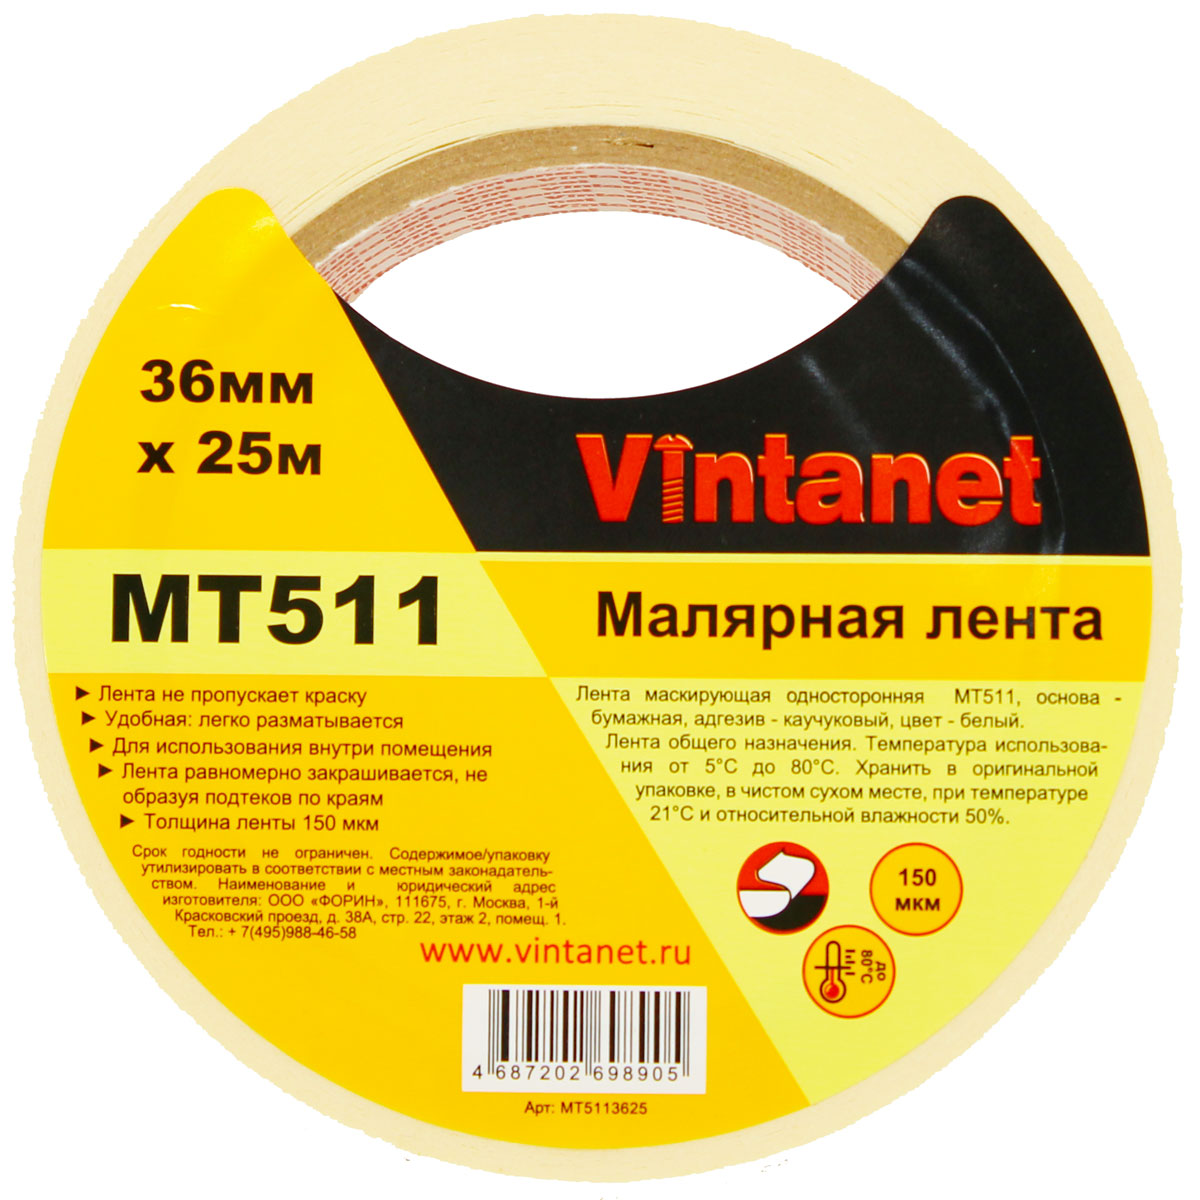 Лента малярная универсальная Vintanet MT511, 80 С, 150 мкм, 36мм х 25м, MT5113625 универсальная экстра тонкая малярная лента color expert